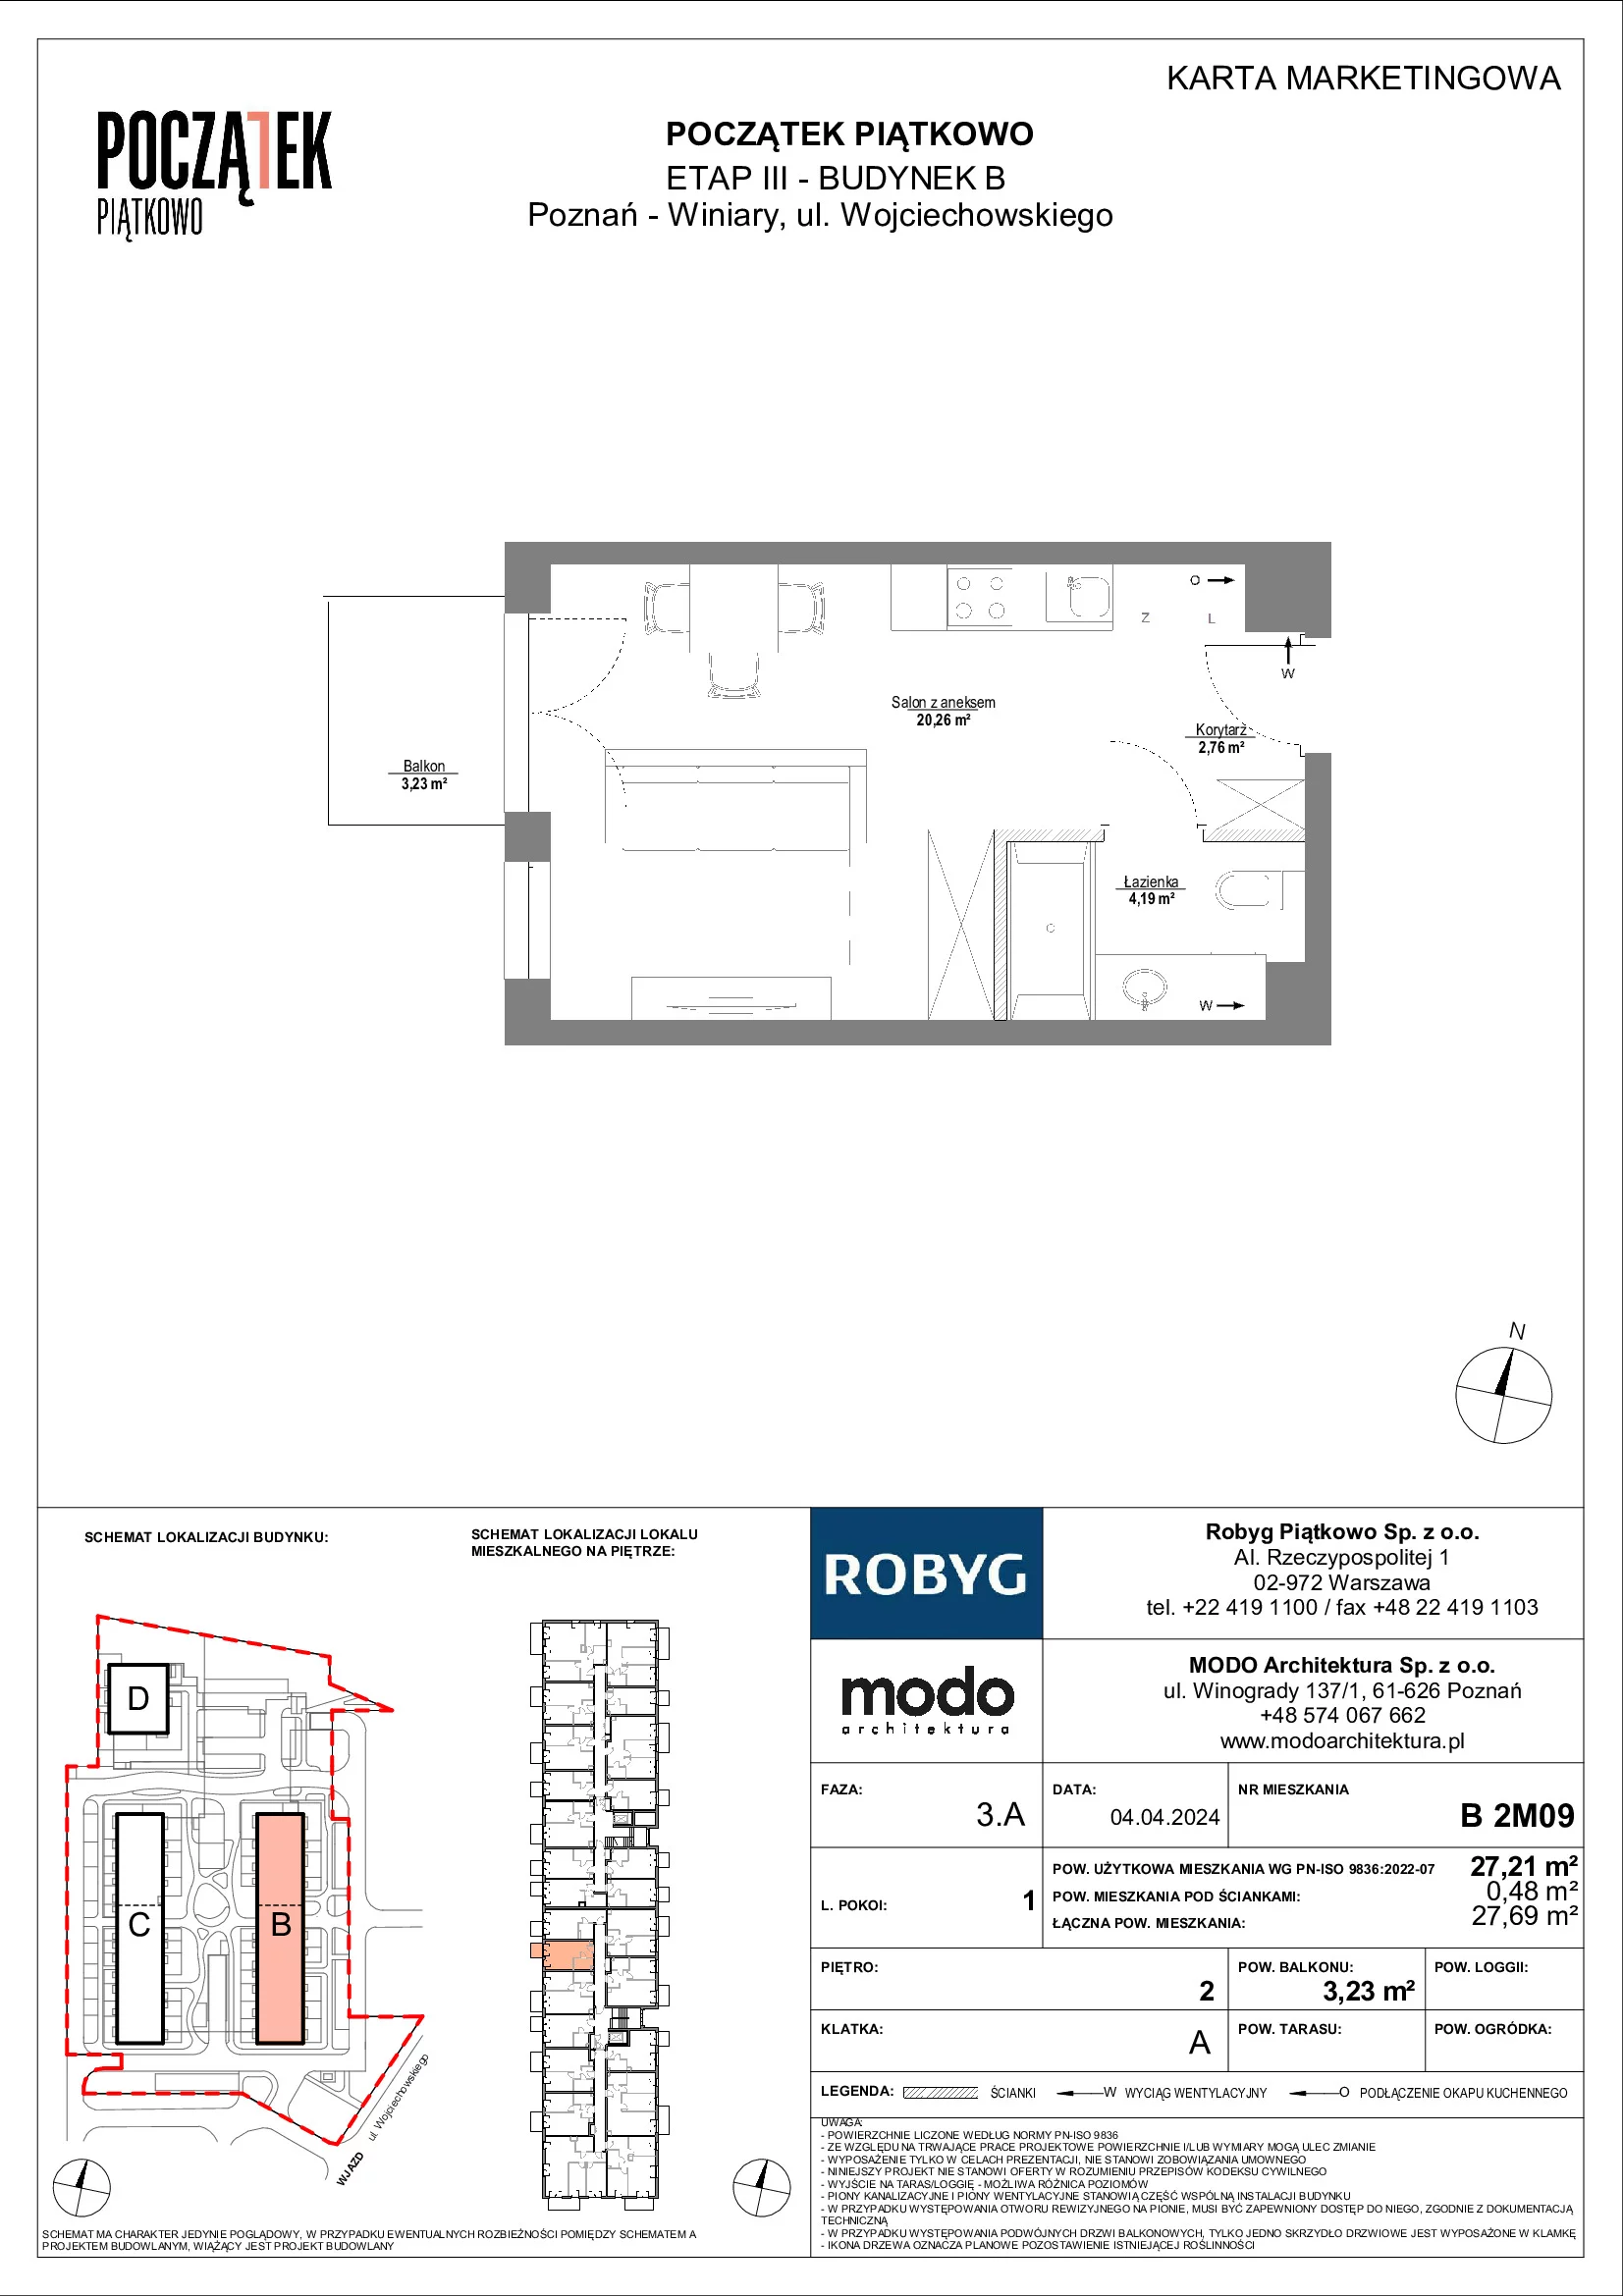 Mieszkanie 27,21 m², piętro 2, oferta nr B.2M09, Początek Piątkowo, Poznań, Piątkowo, ul. Wojciechowskiego